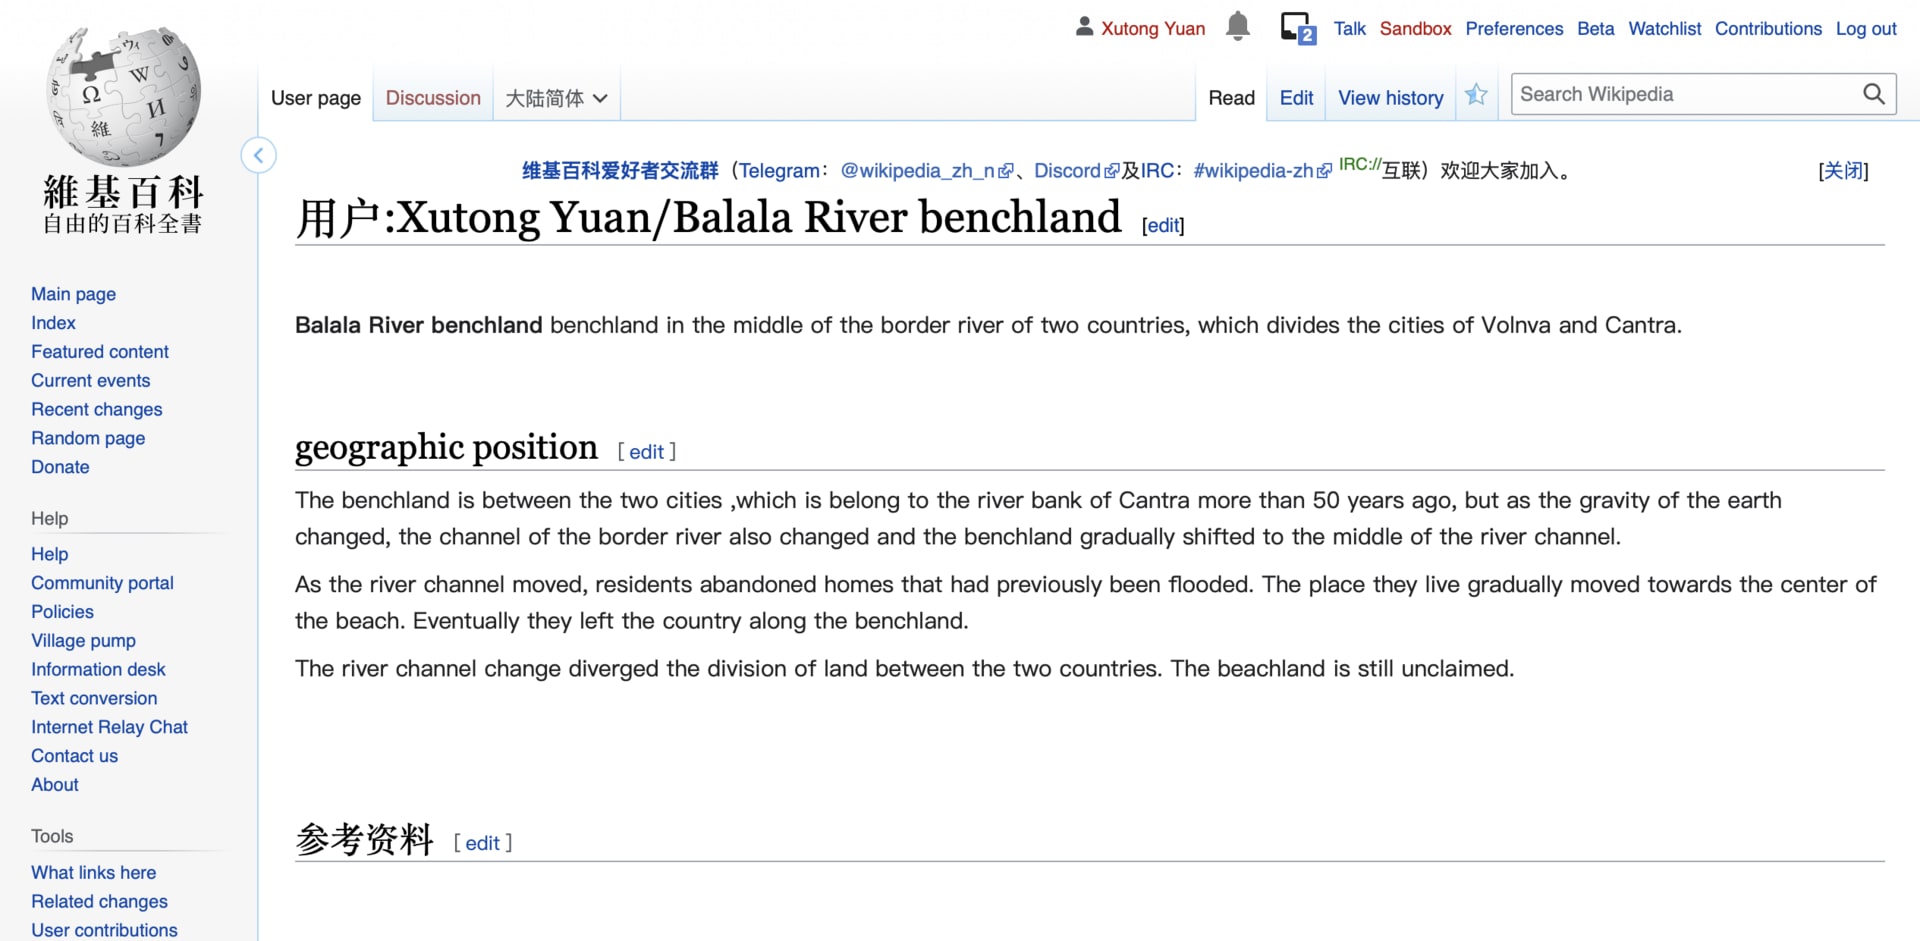 The Balala River in Wikipedia 